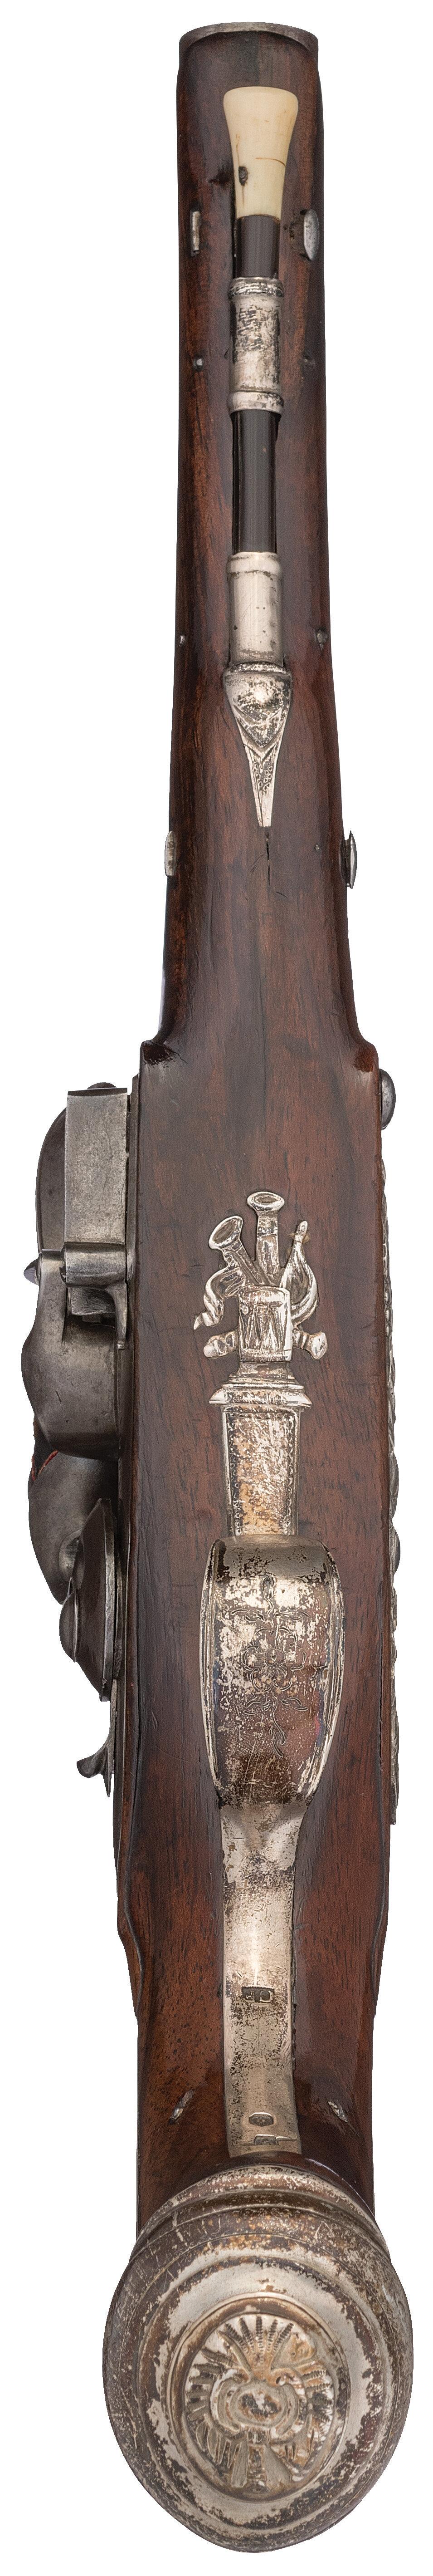 Revolutionary War Era Silver Mounted Flintlock Pistols by Barbar